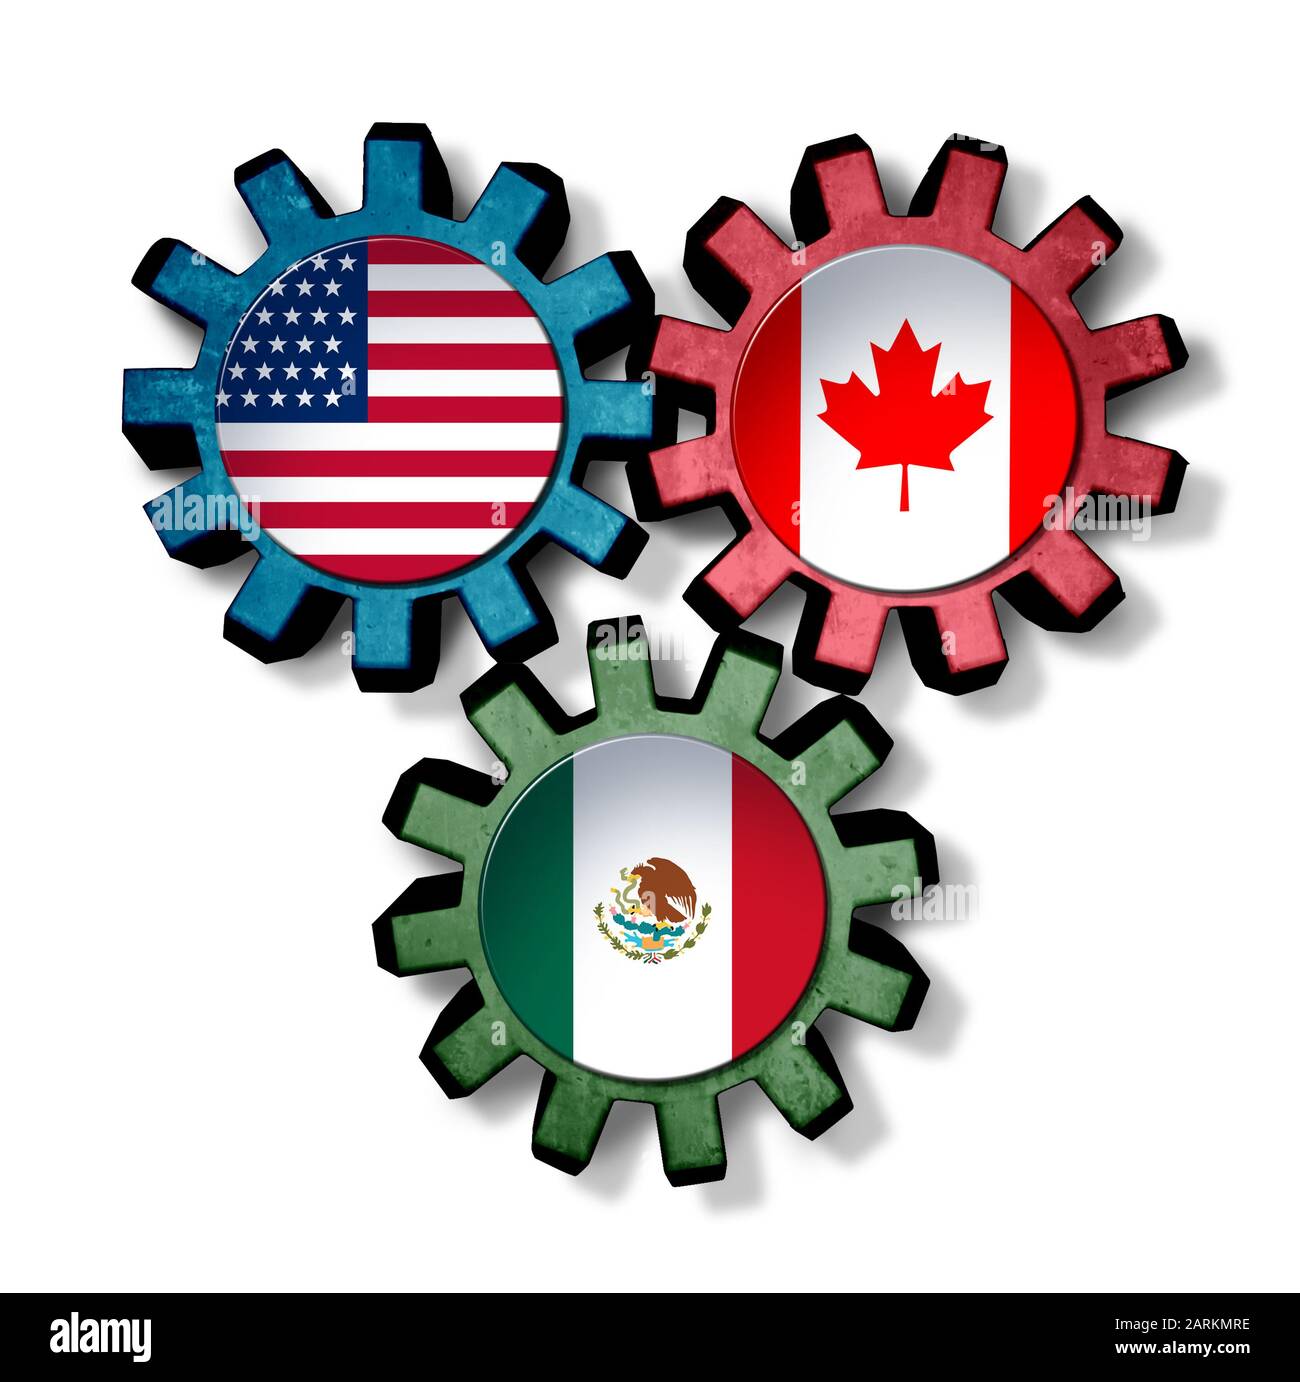 USMCA concepto de negocio pacto comercial como Estados Unidos Canadá y México América del Norte acuerdo económico. Foto de stock